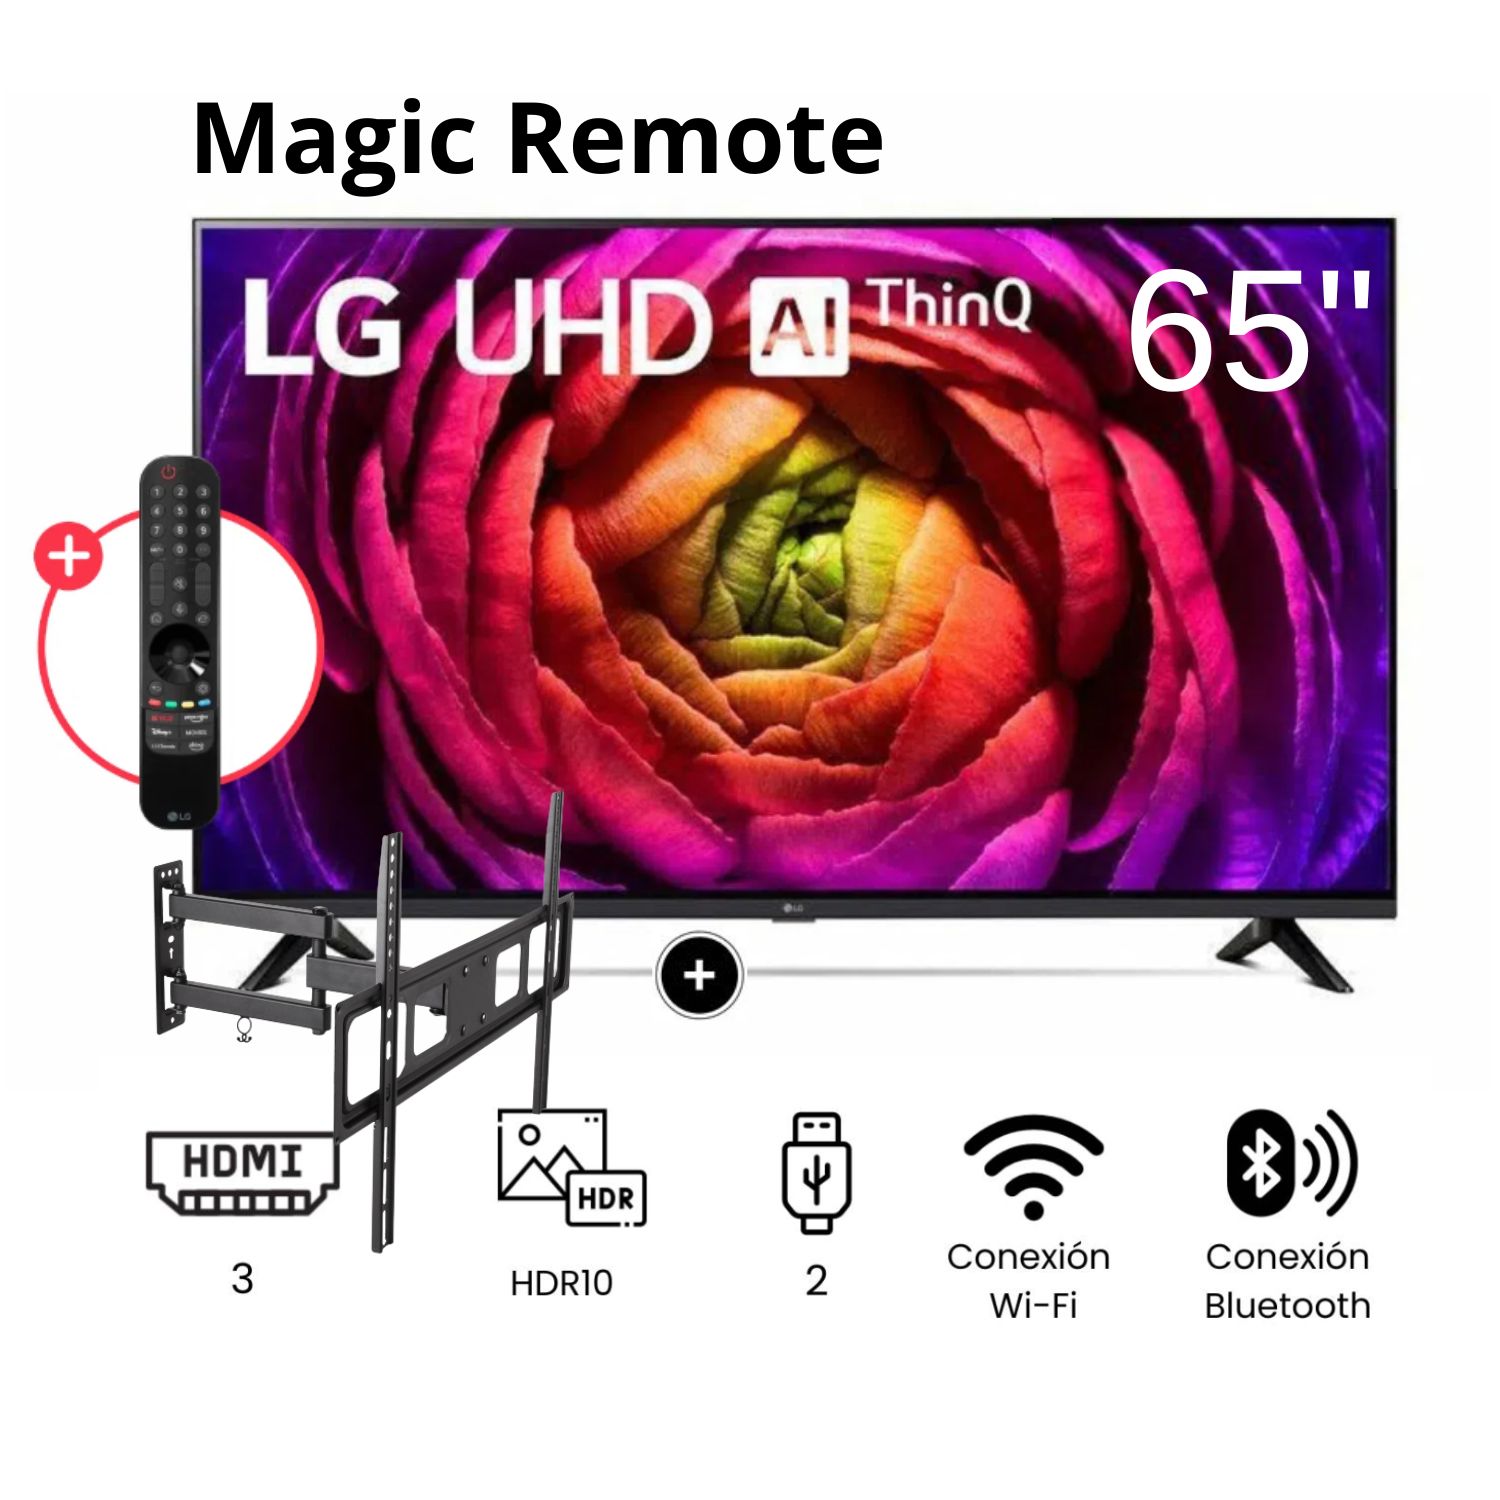 Televisor LG LED  Smart TV 65'' UHD 4K ThinQ AI 65UR7300 + Rack Giratorio